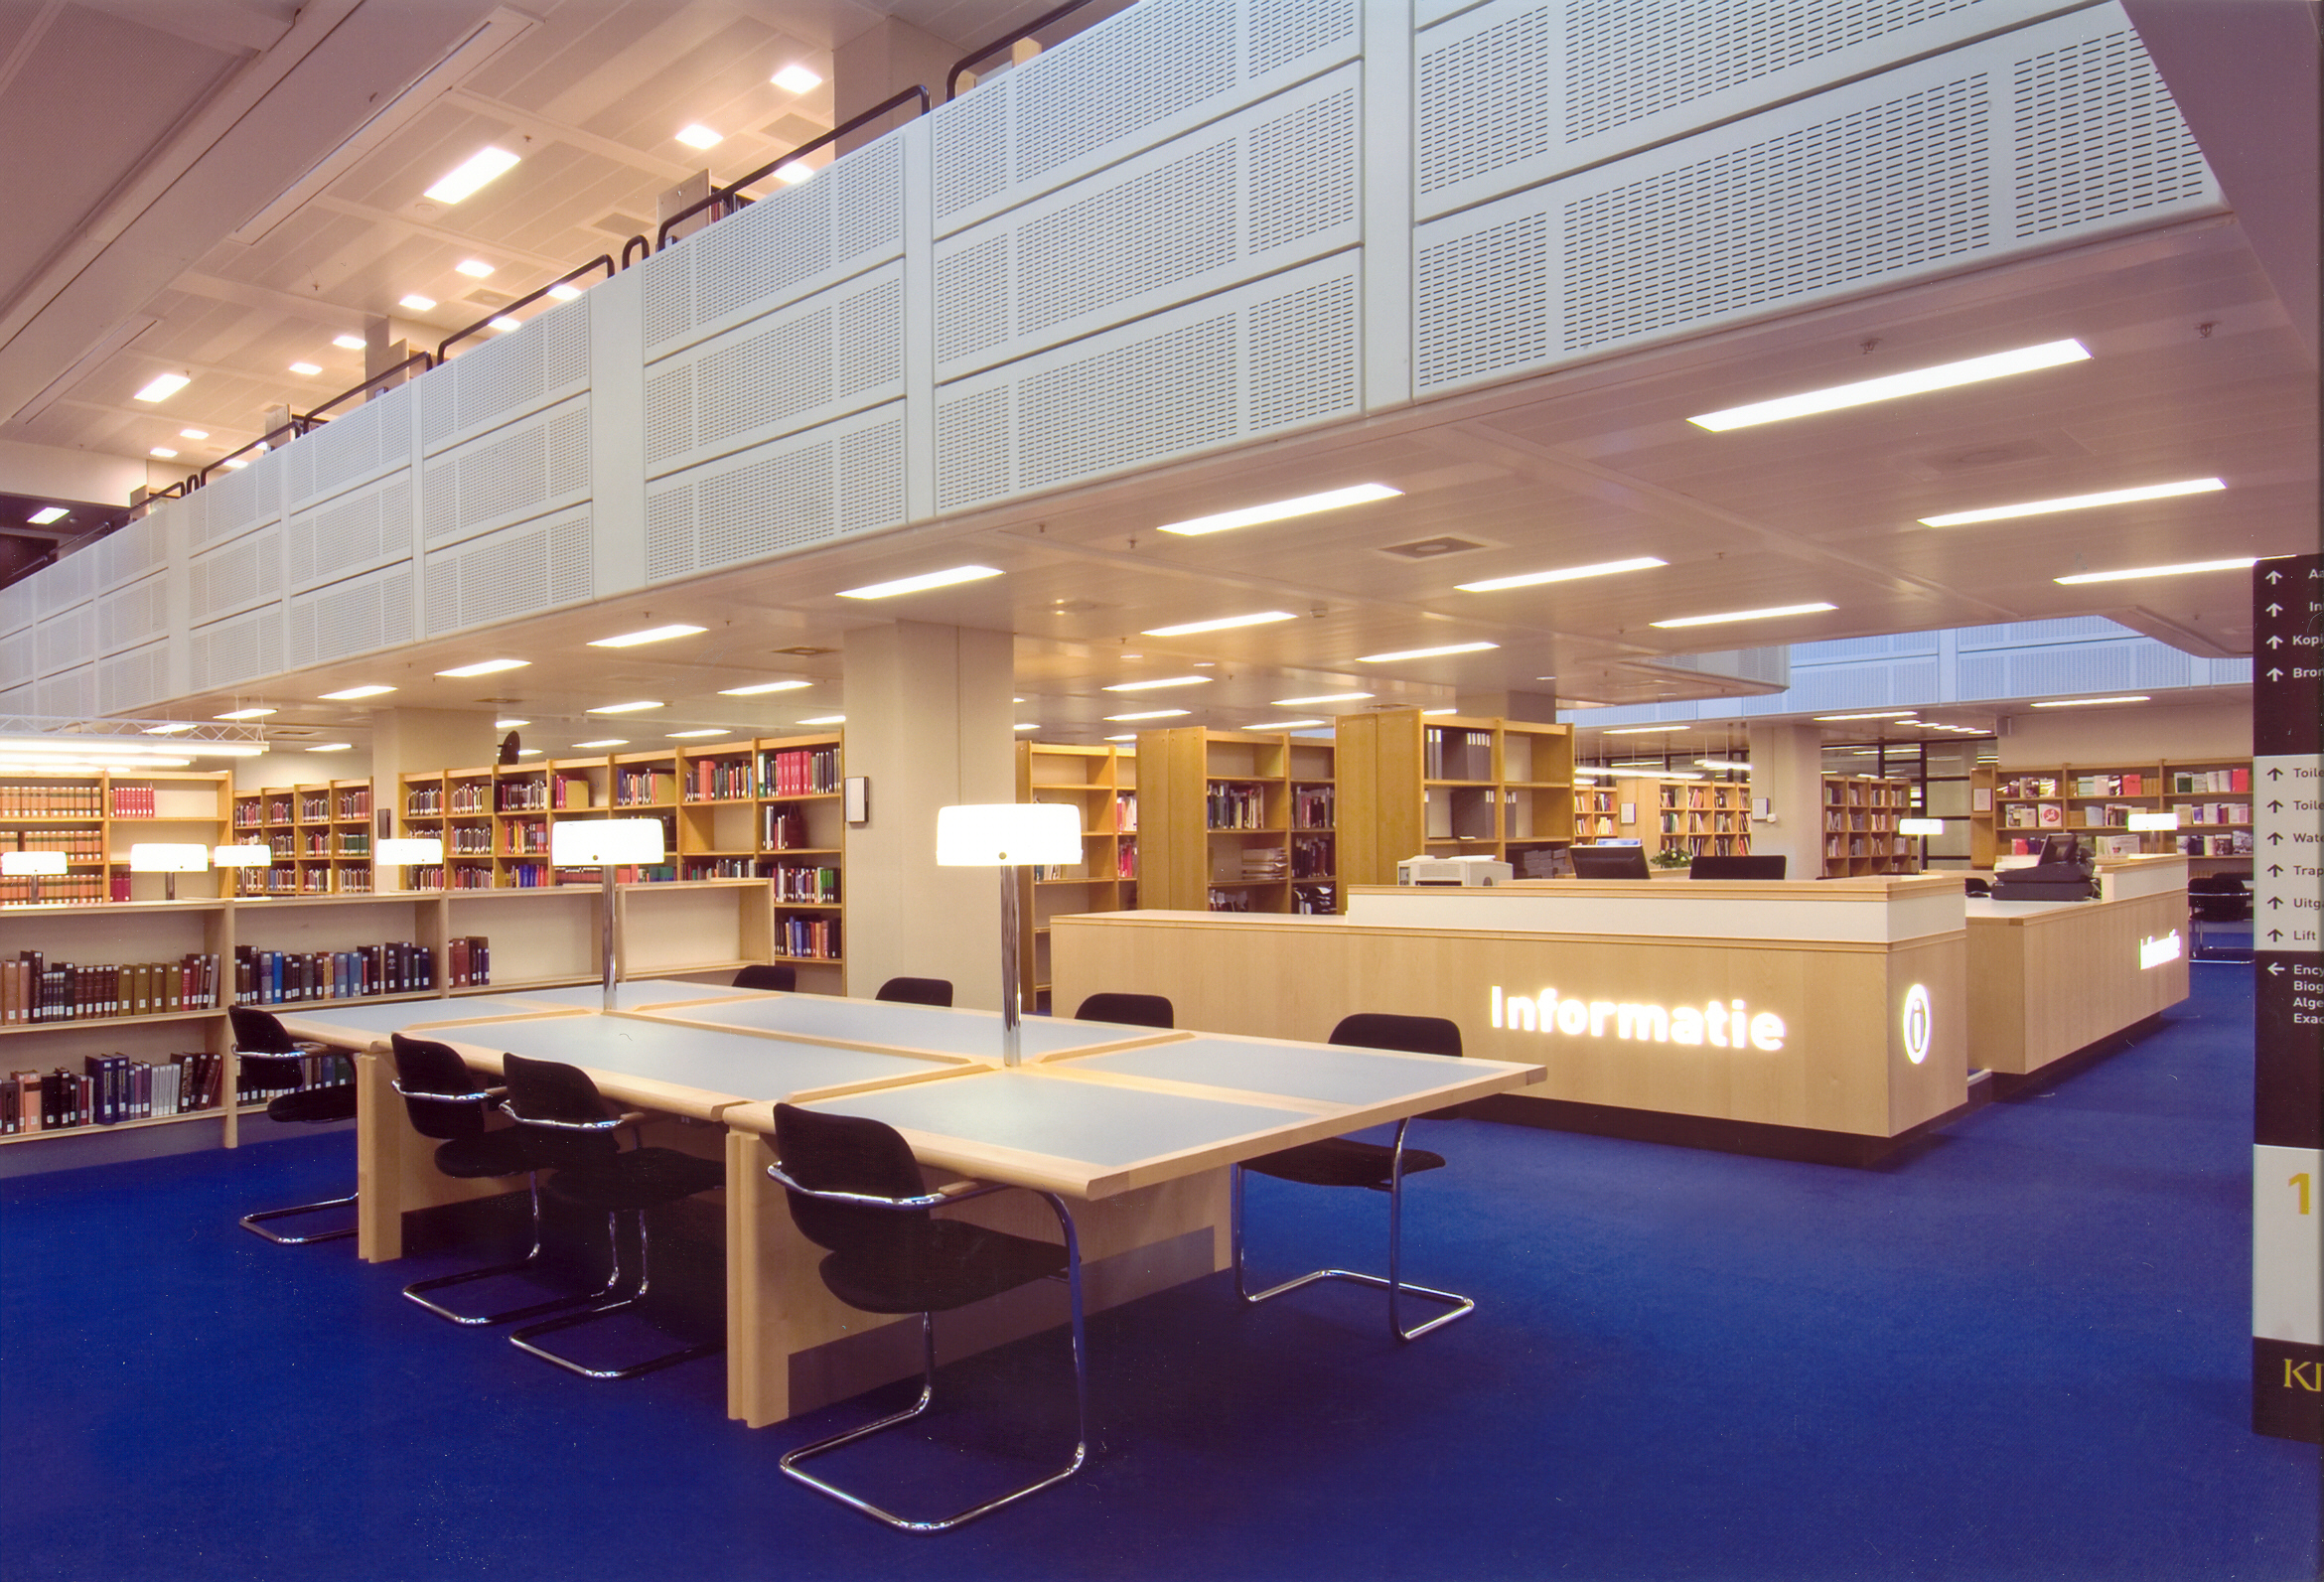 Interior Royal Library The Hague